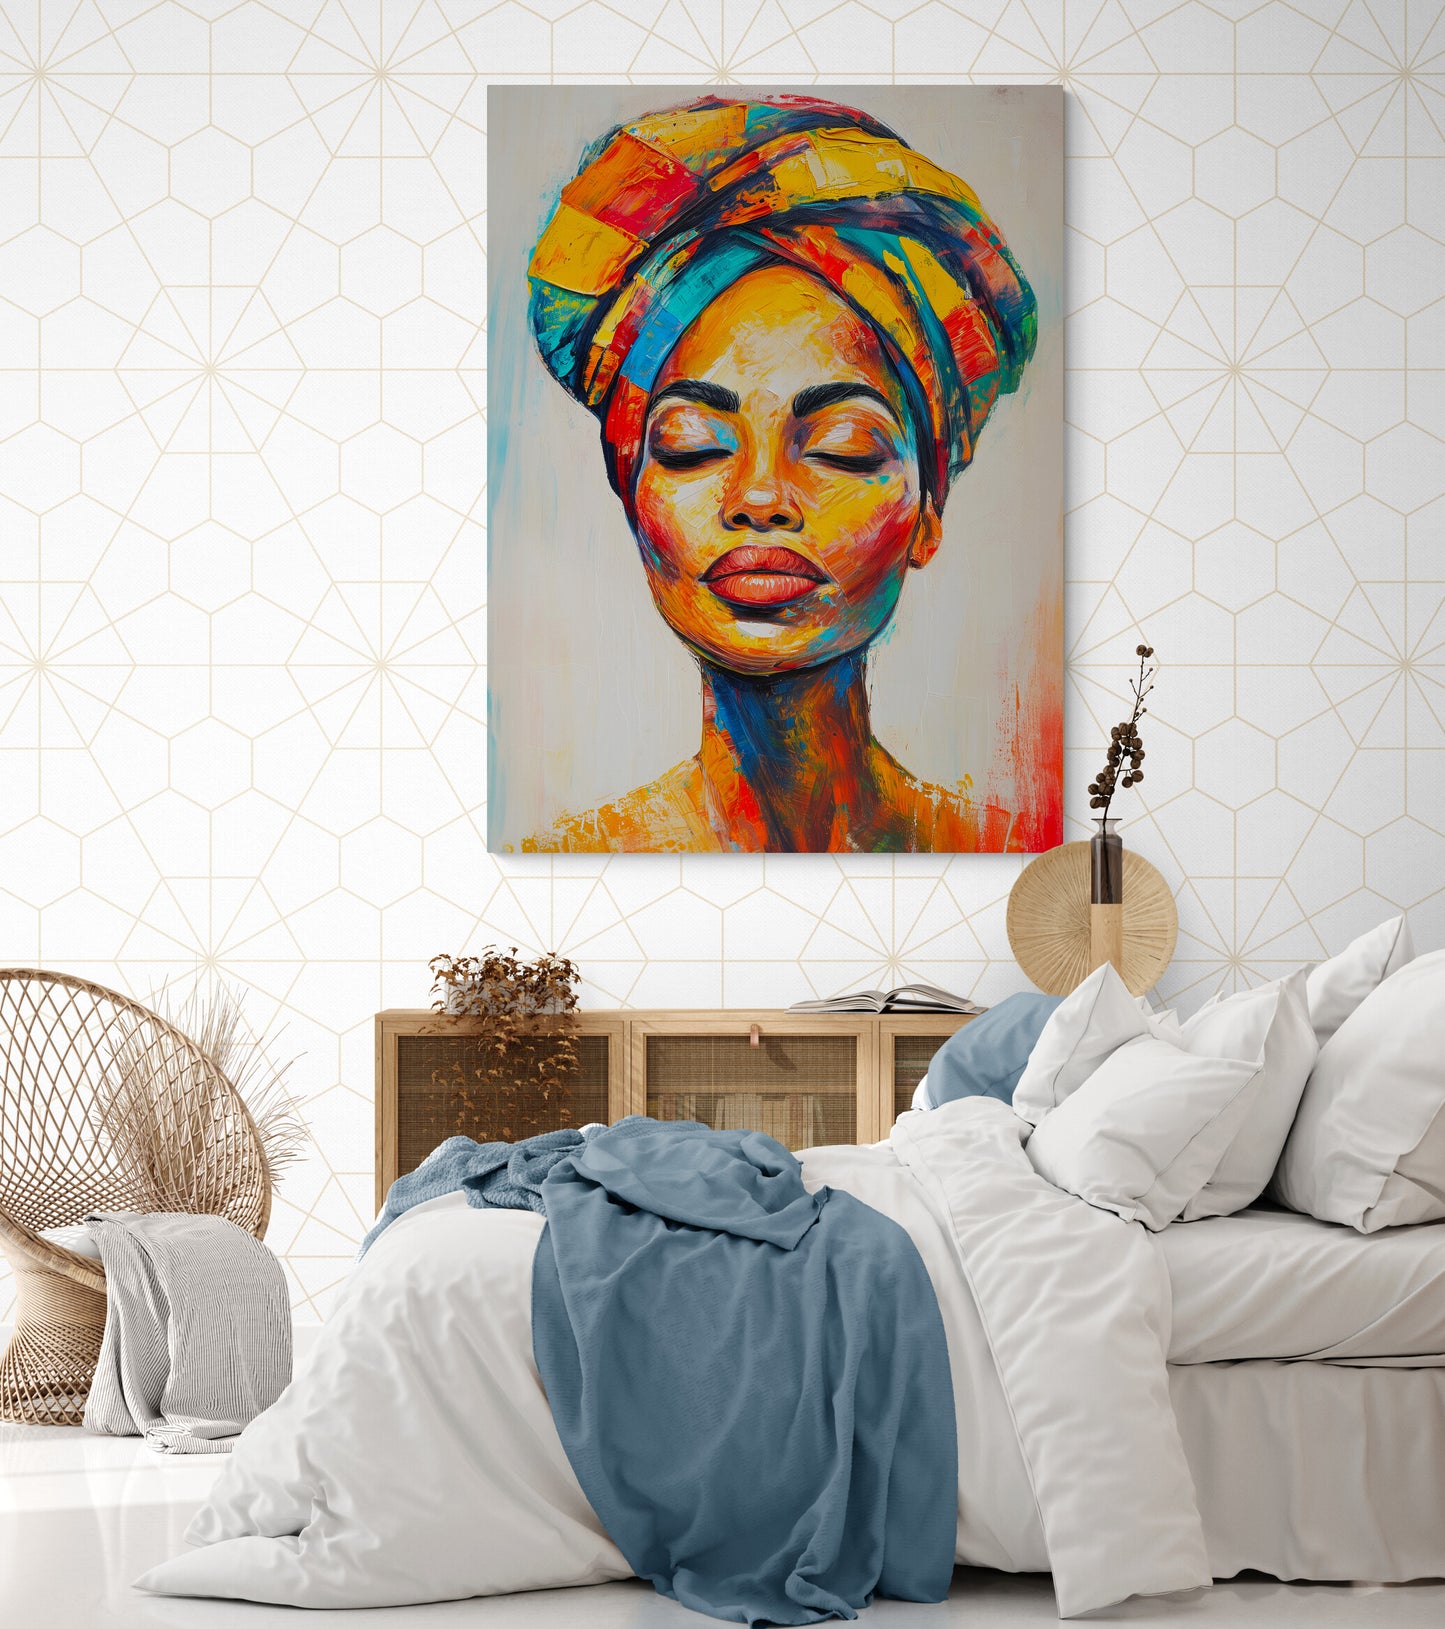 Peinture vive de femme au turban dans une chambre lumineuse et aérée.